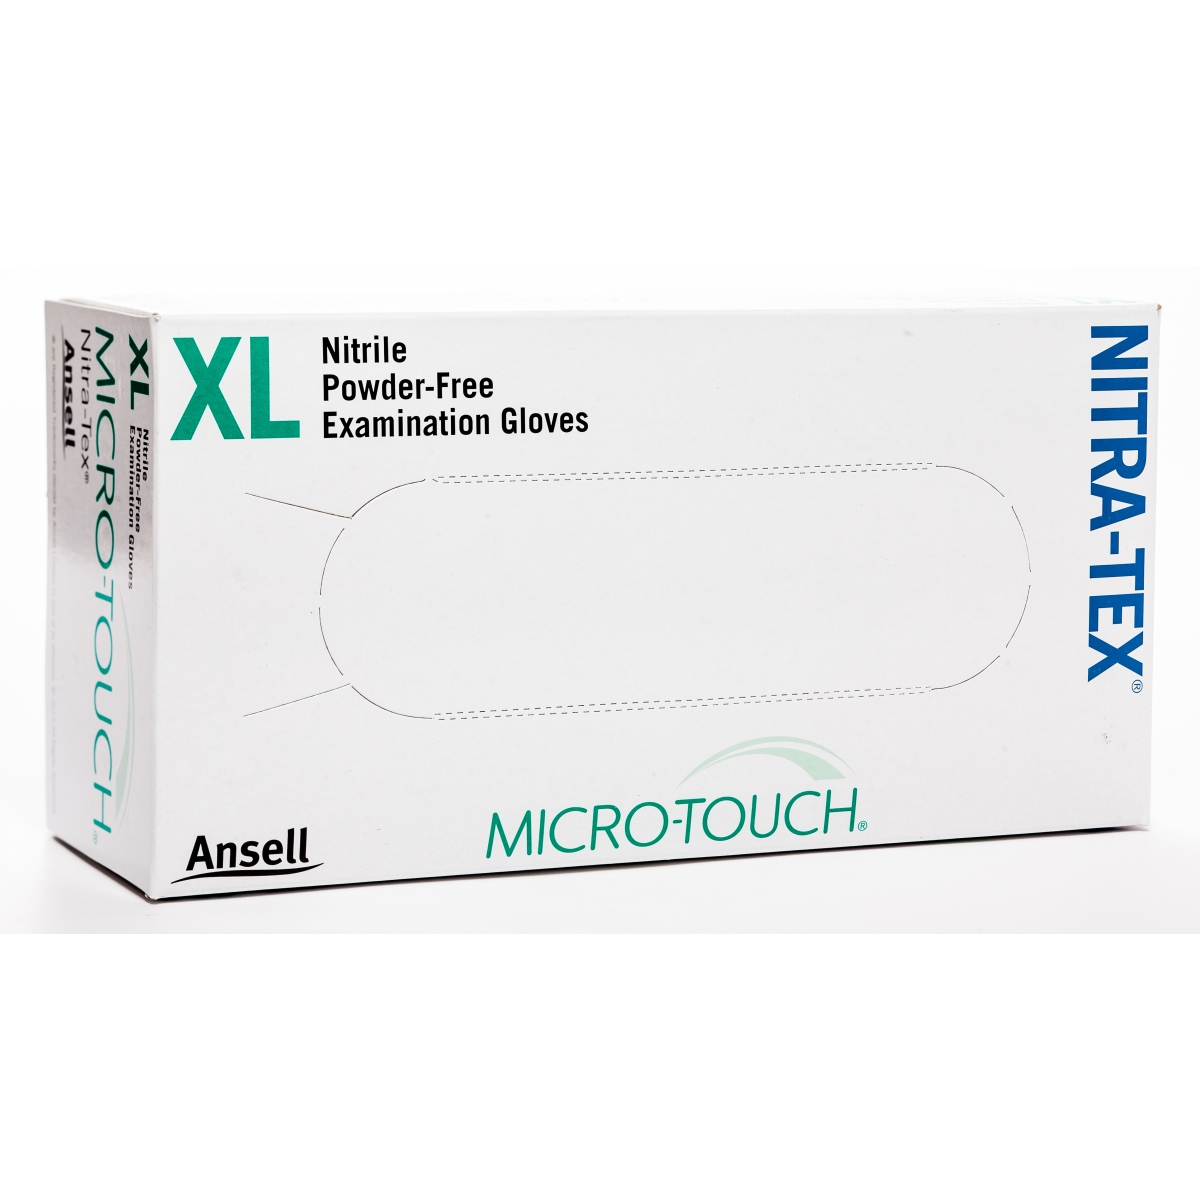 ANSEL CIMDI MICRO-TOUCH NITRA-TEX XL N100